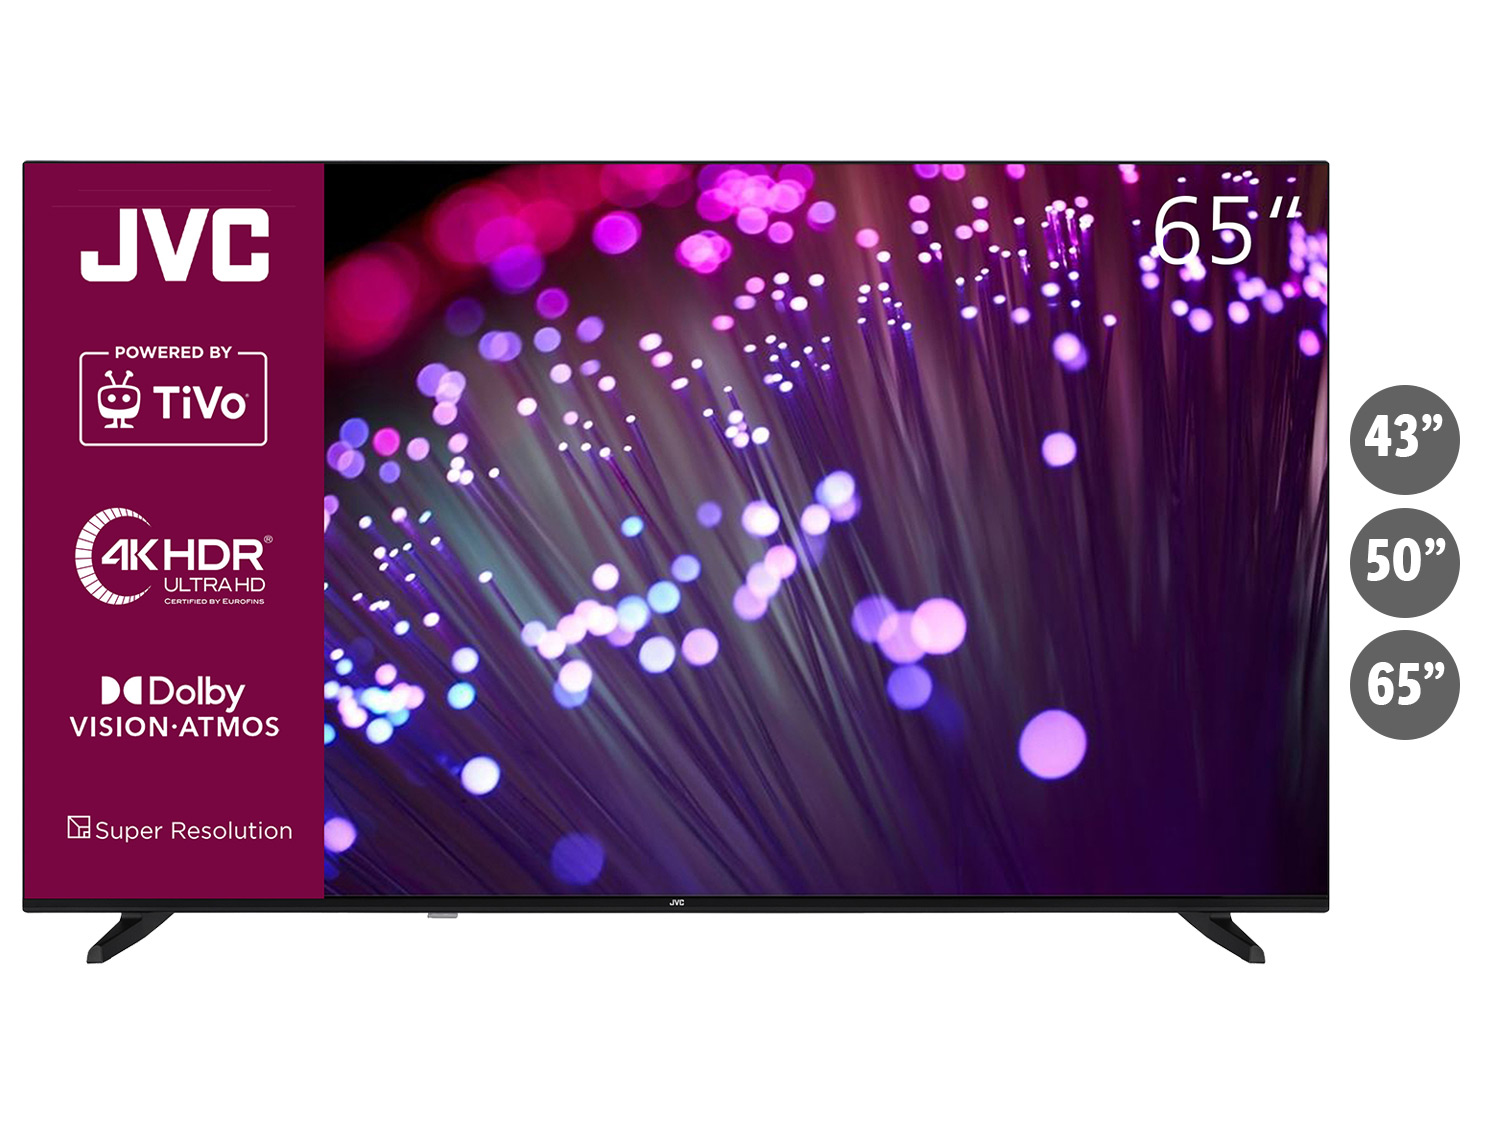 JVC Fernseher »LT-VU3455« TiVo Smart TV 4K UHD